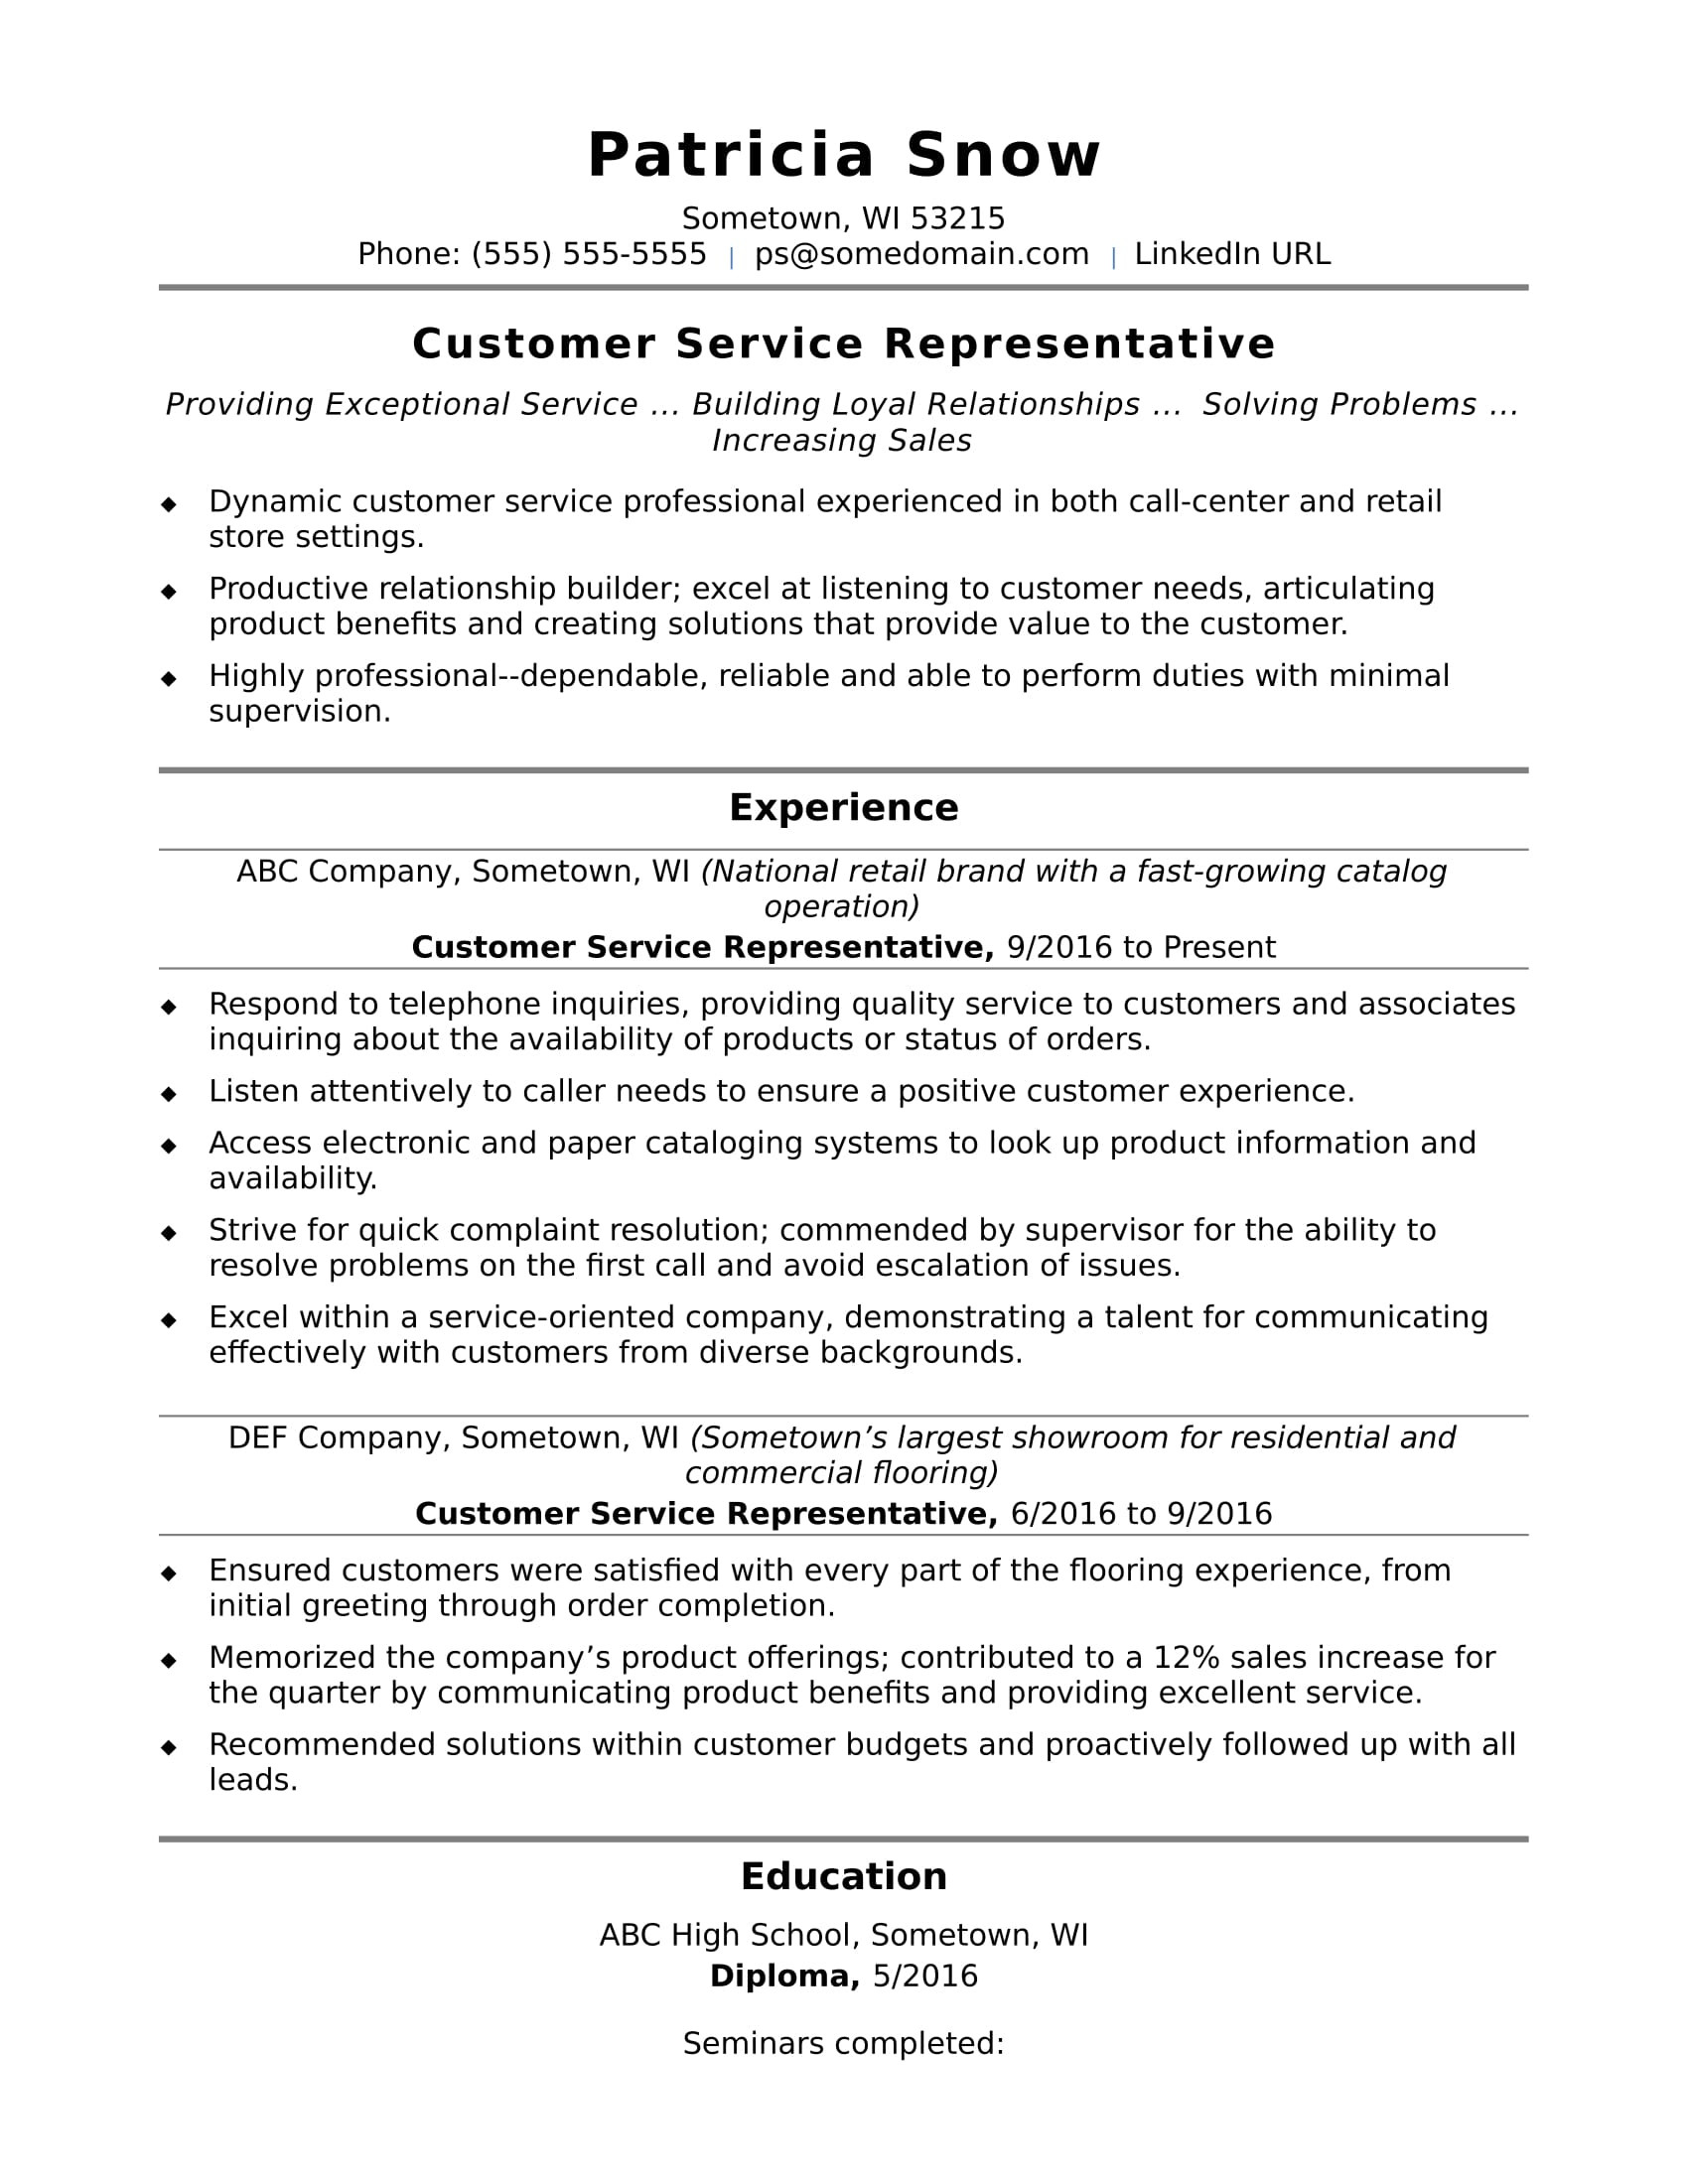 Sample Resume for Health Insurance Customer Service Rep Entry-level Customer Service Resume Sample Monster.com